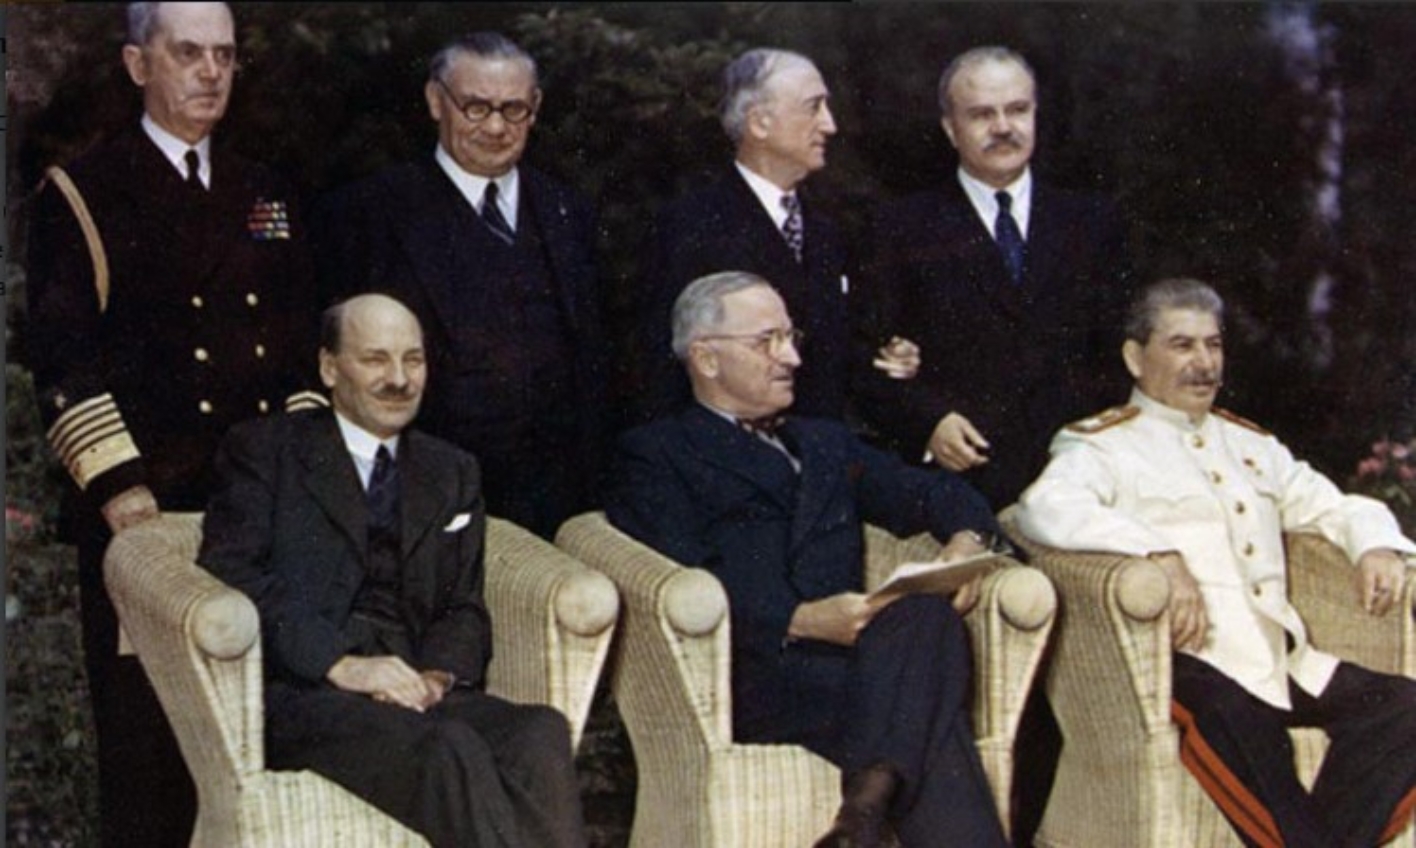 Clement Attlee, Harry S. Truman und Josef Stalin sitzen in Korbstühlen. Hinter ihnen stehen ihre jeweiligen Außenminister.